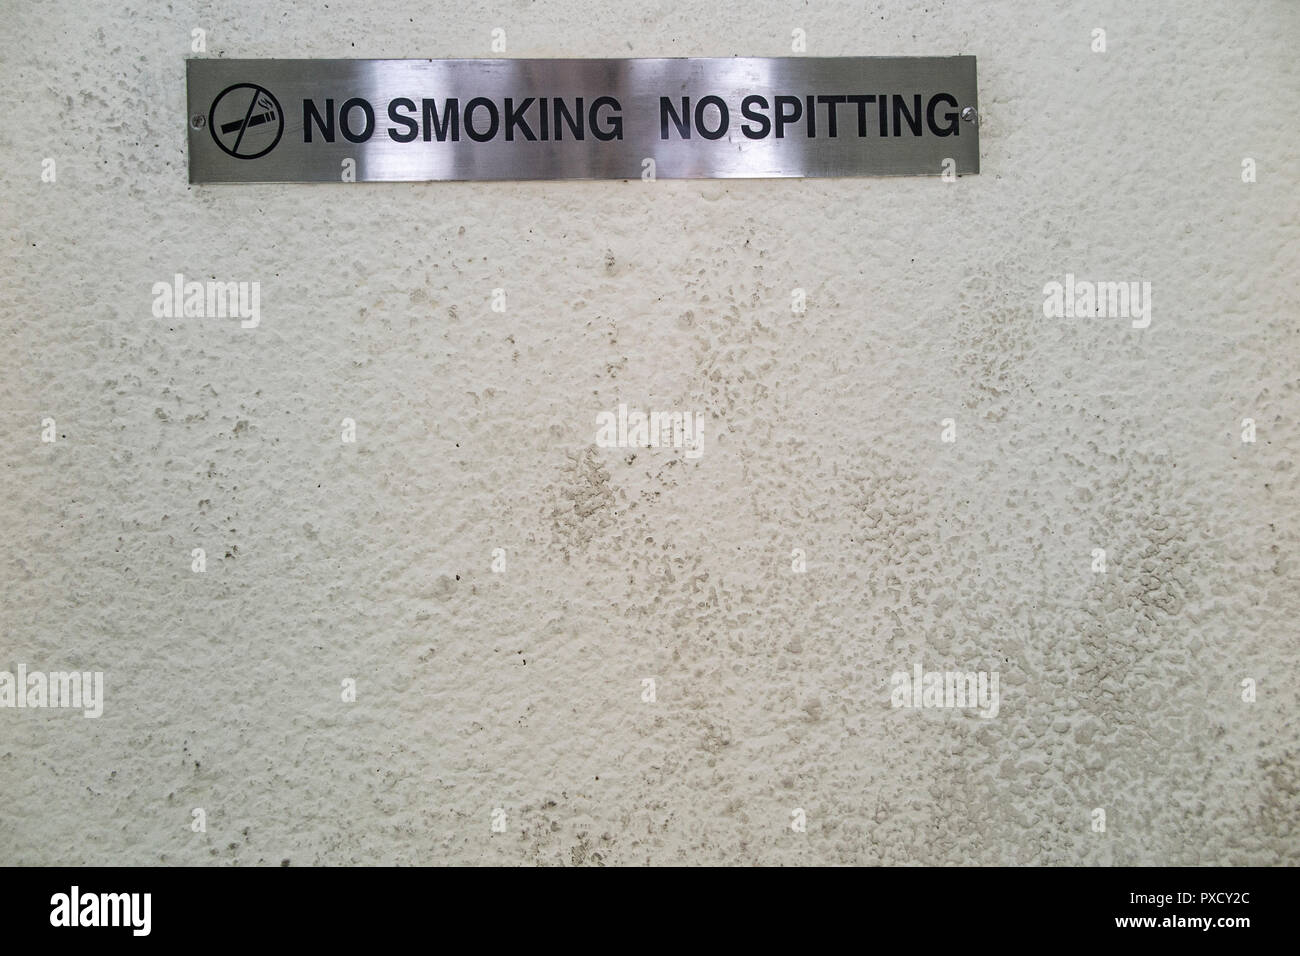 Smoking Spitting